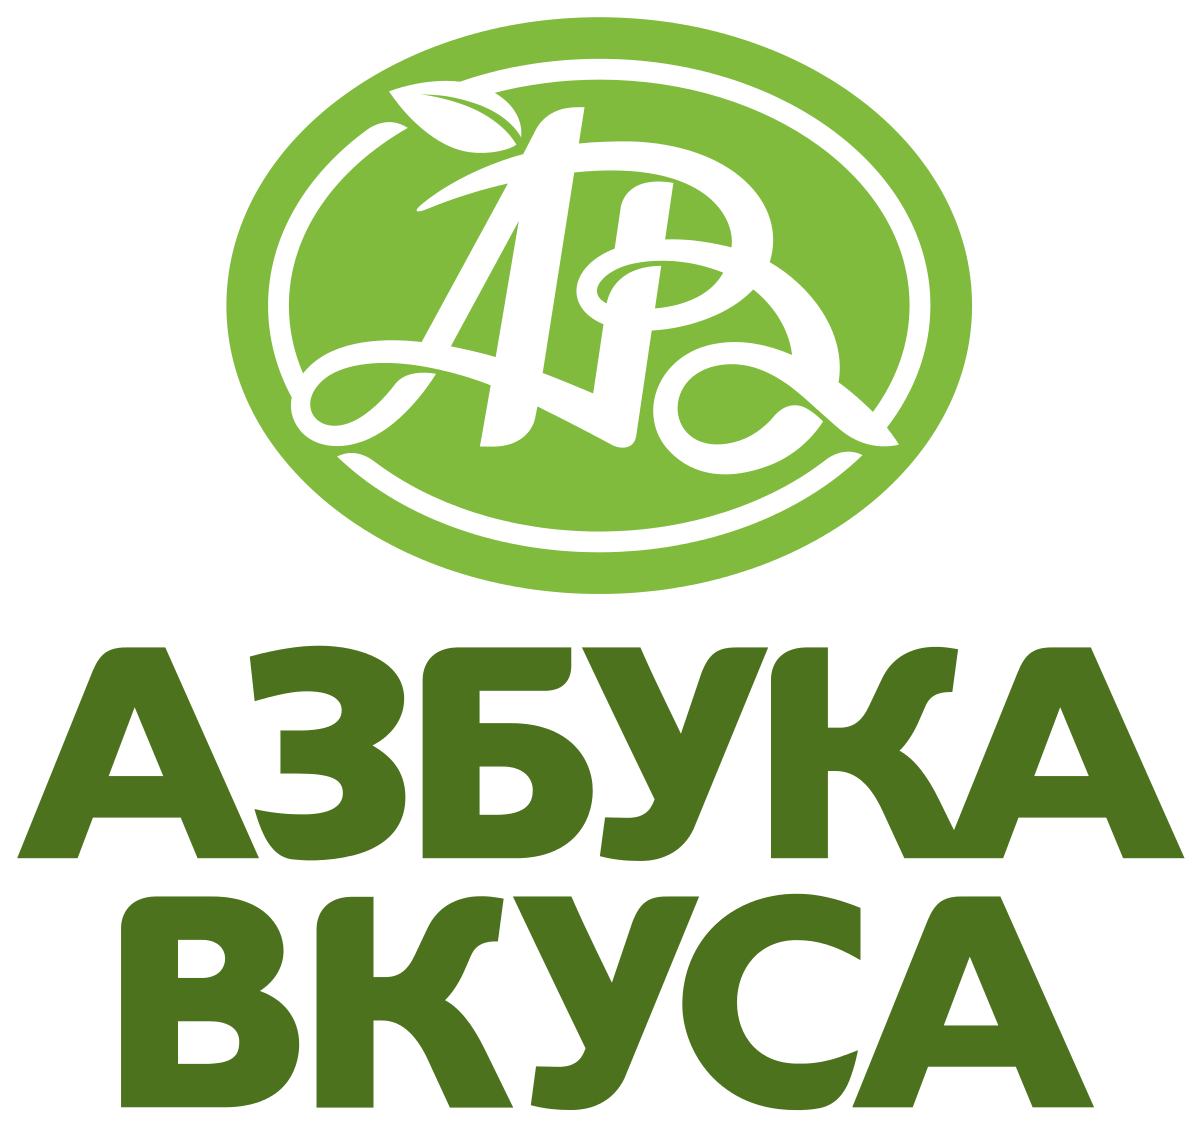 Сеть супермаркетов «Азбука вкусов» открыла собственный ресторан в одной из башен Москва-Сити